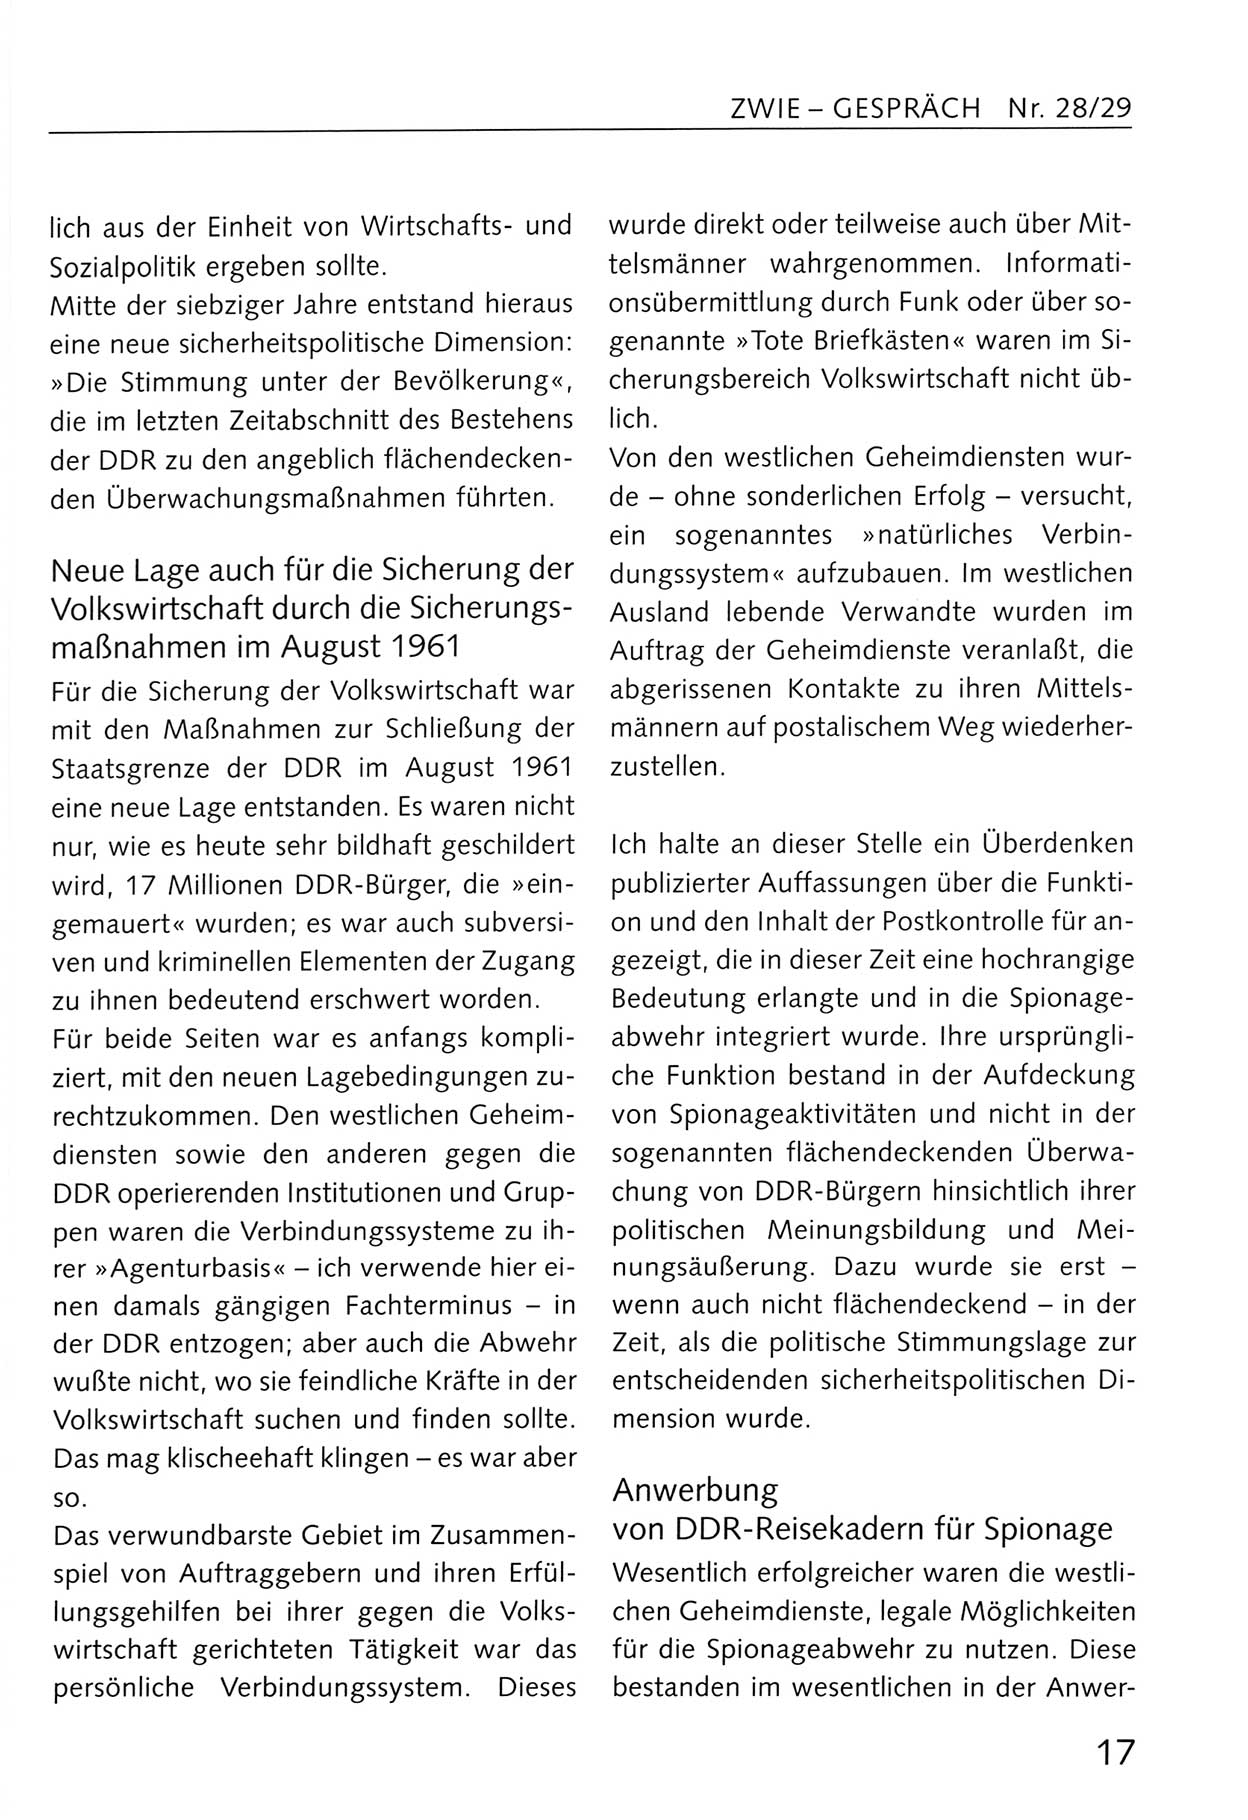 Zwie-Gespräch, Beiträge zum Umgang mit der Staatssicherheits-Vergangenheit [Deutsche Demokratische Republik (DDR)], Ausgabe Nr. 28/29, Berlin 1995, Seite 17 (Zwie-Gespr. Ausg. 28/29 1995, S. 17)